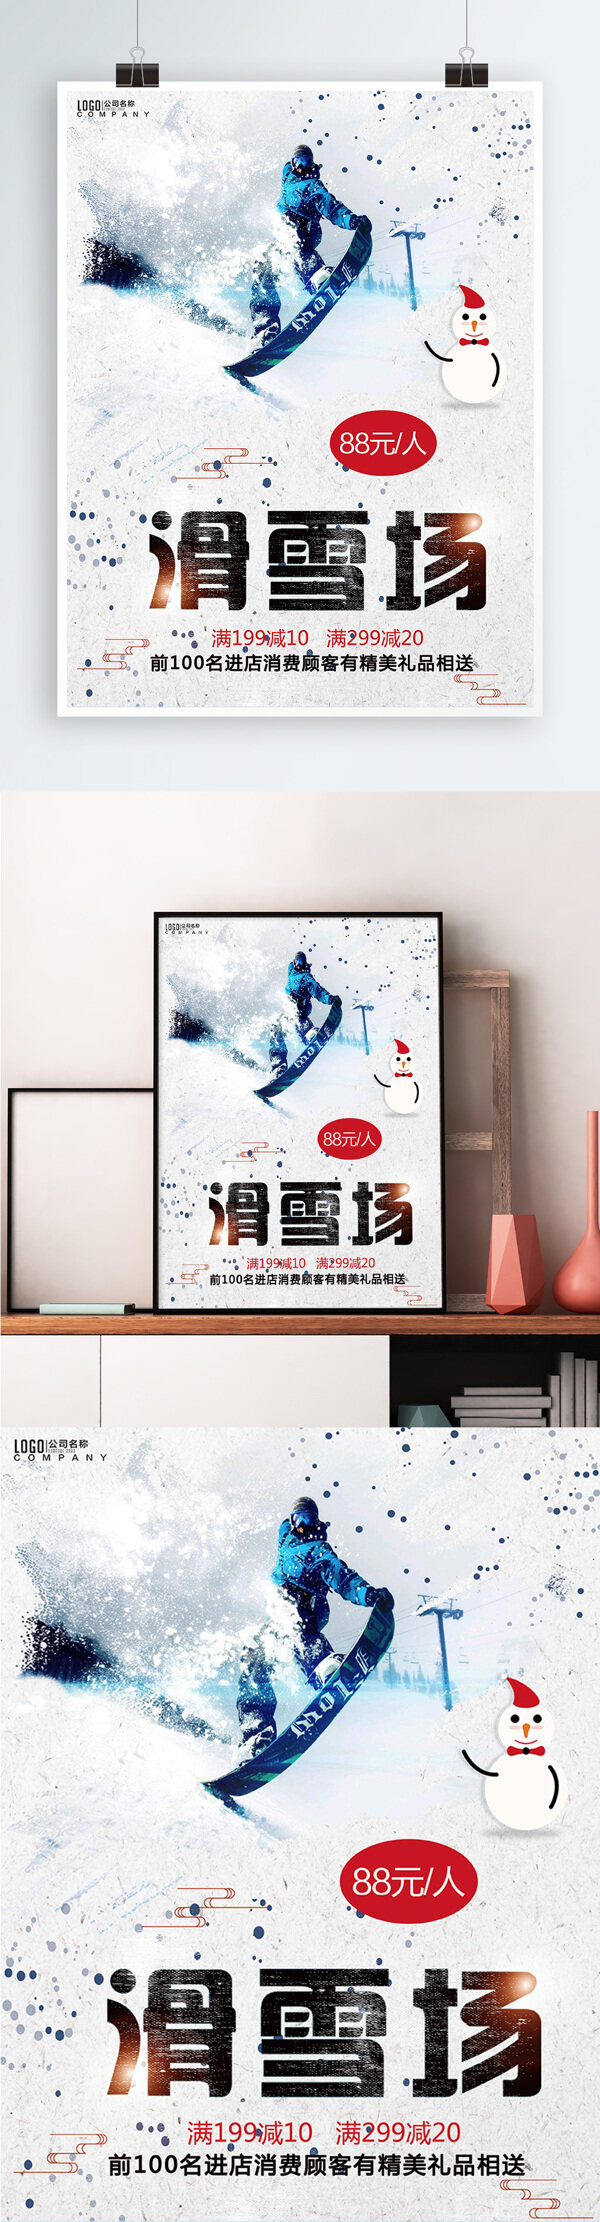 白色背景简约大气滑雪场旅游宣传海报